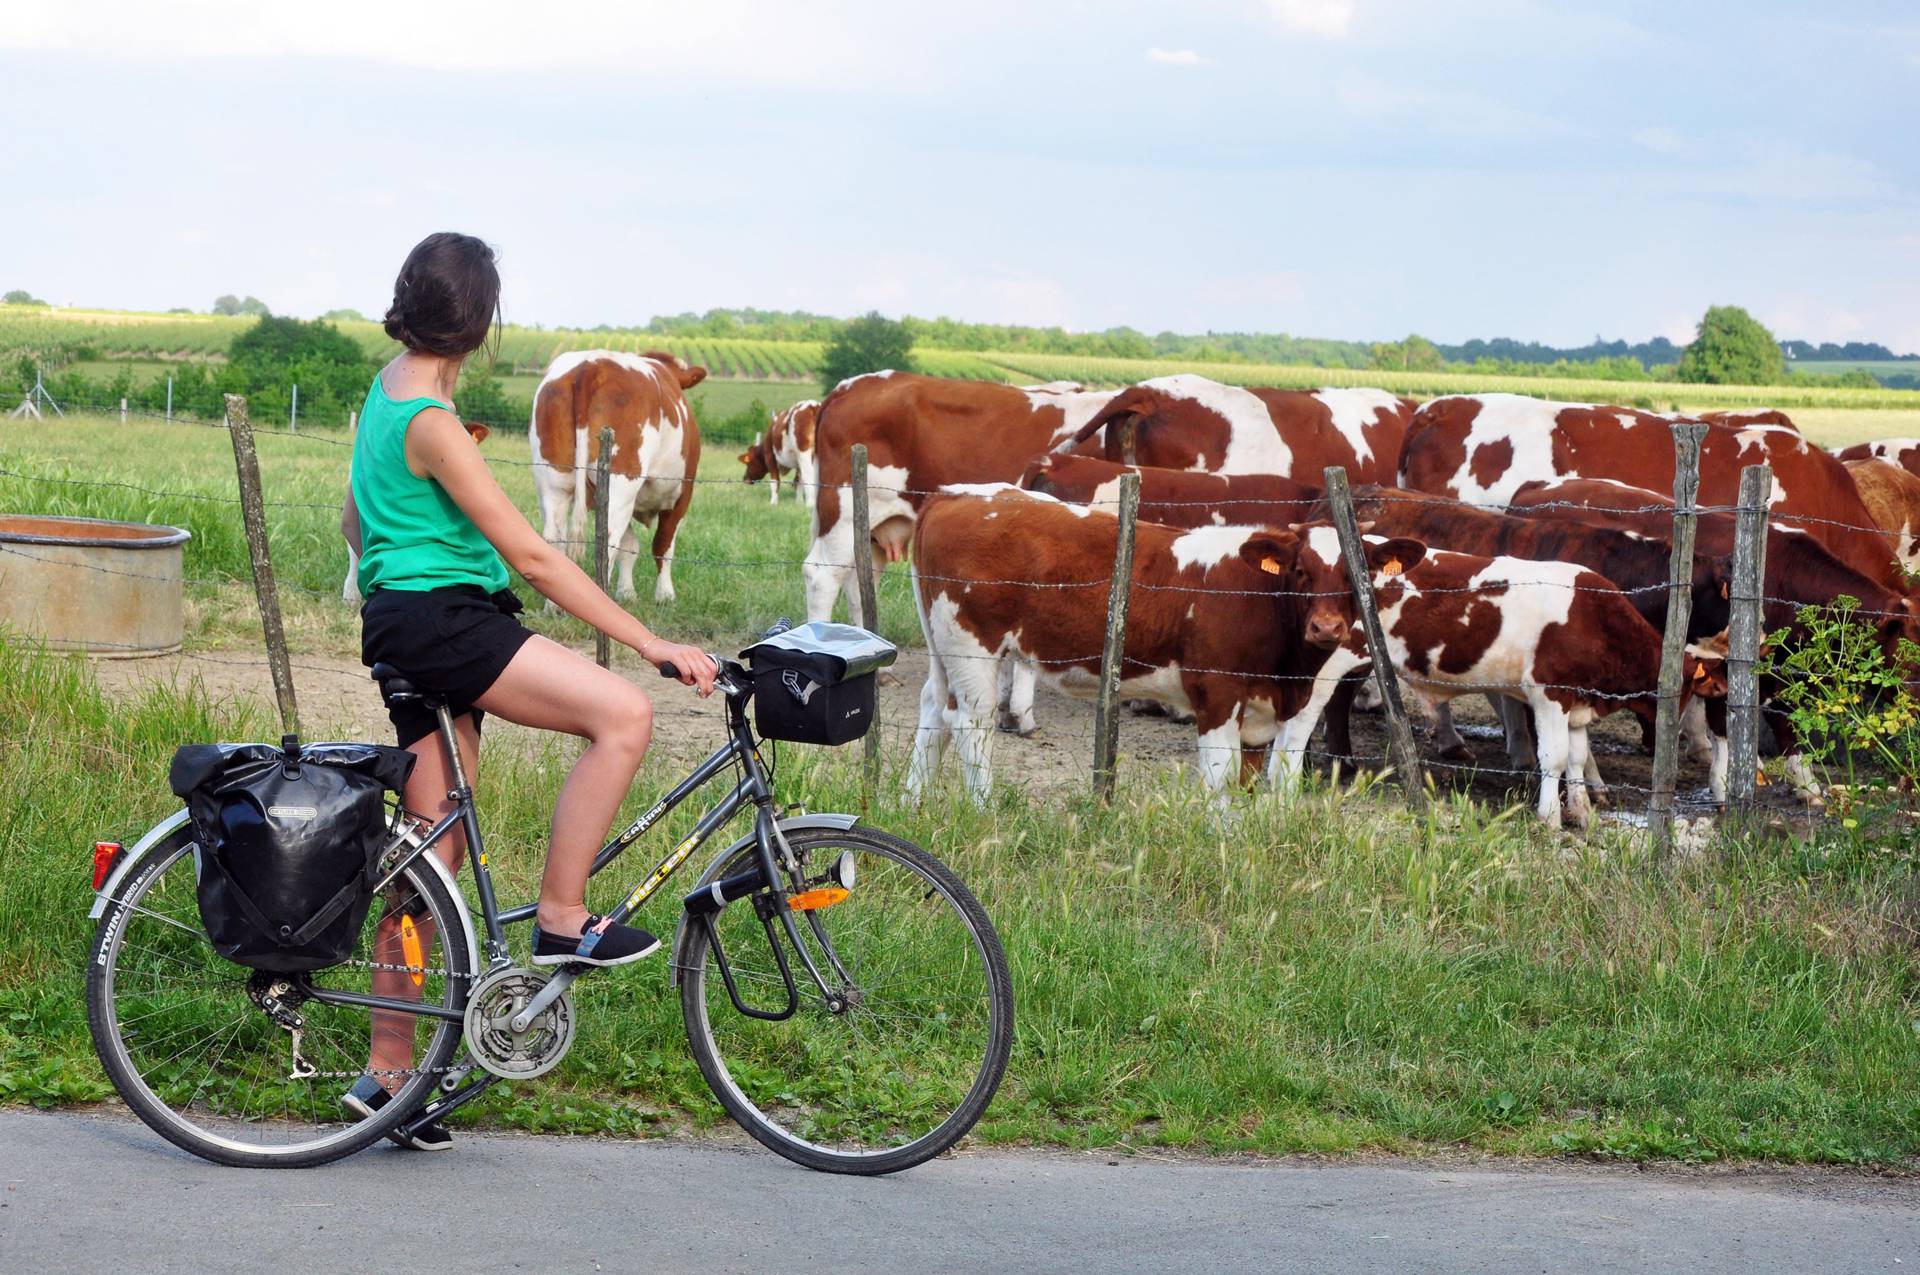 randonnée découvrir la Loire à vélo hébergement de ferme en ferme